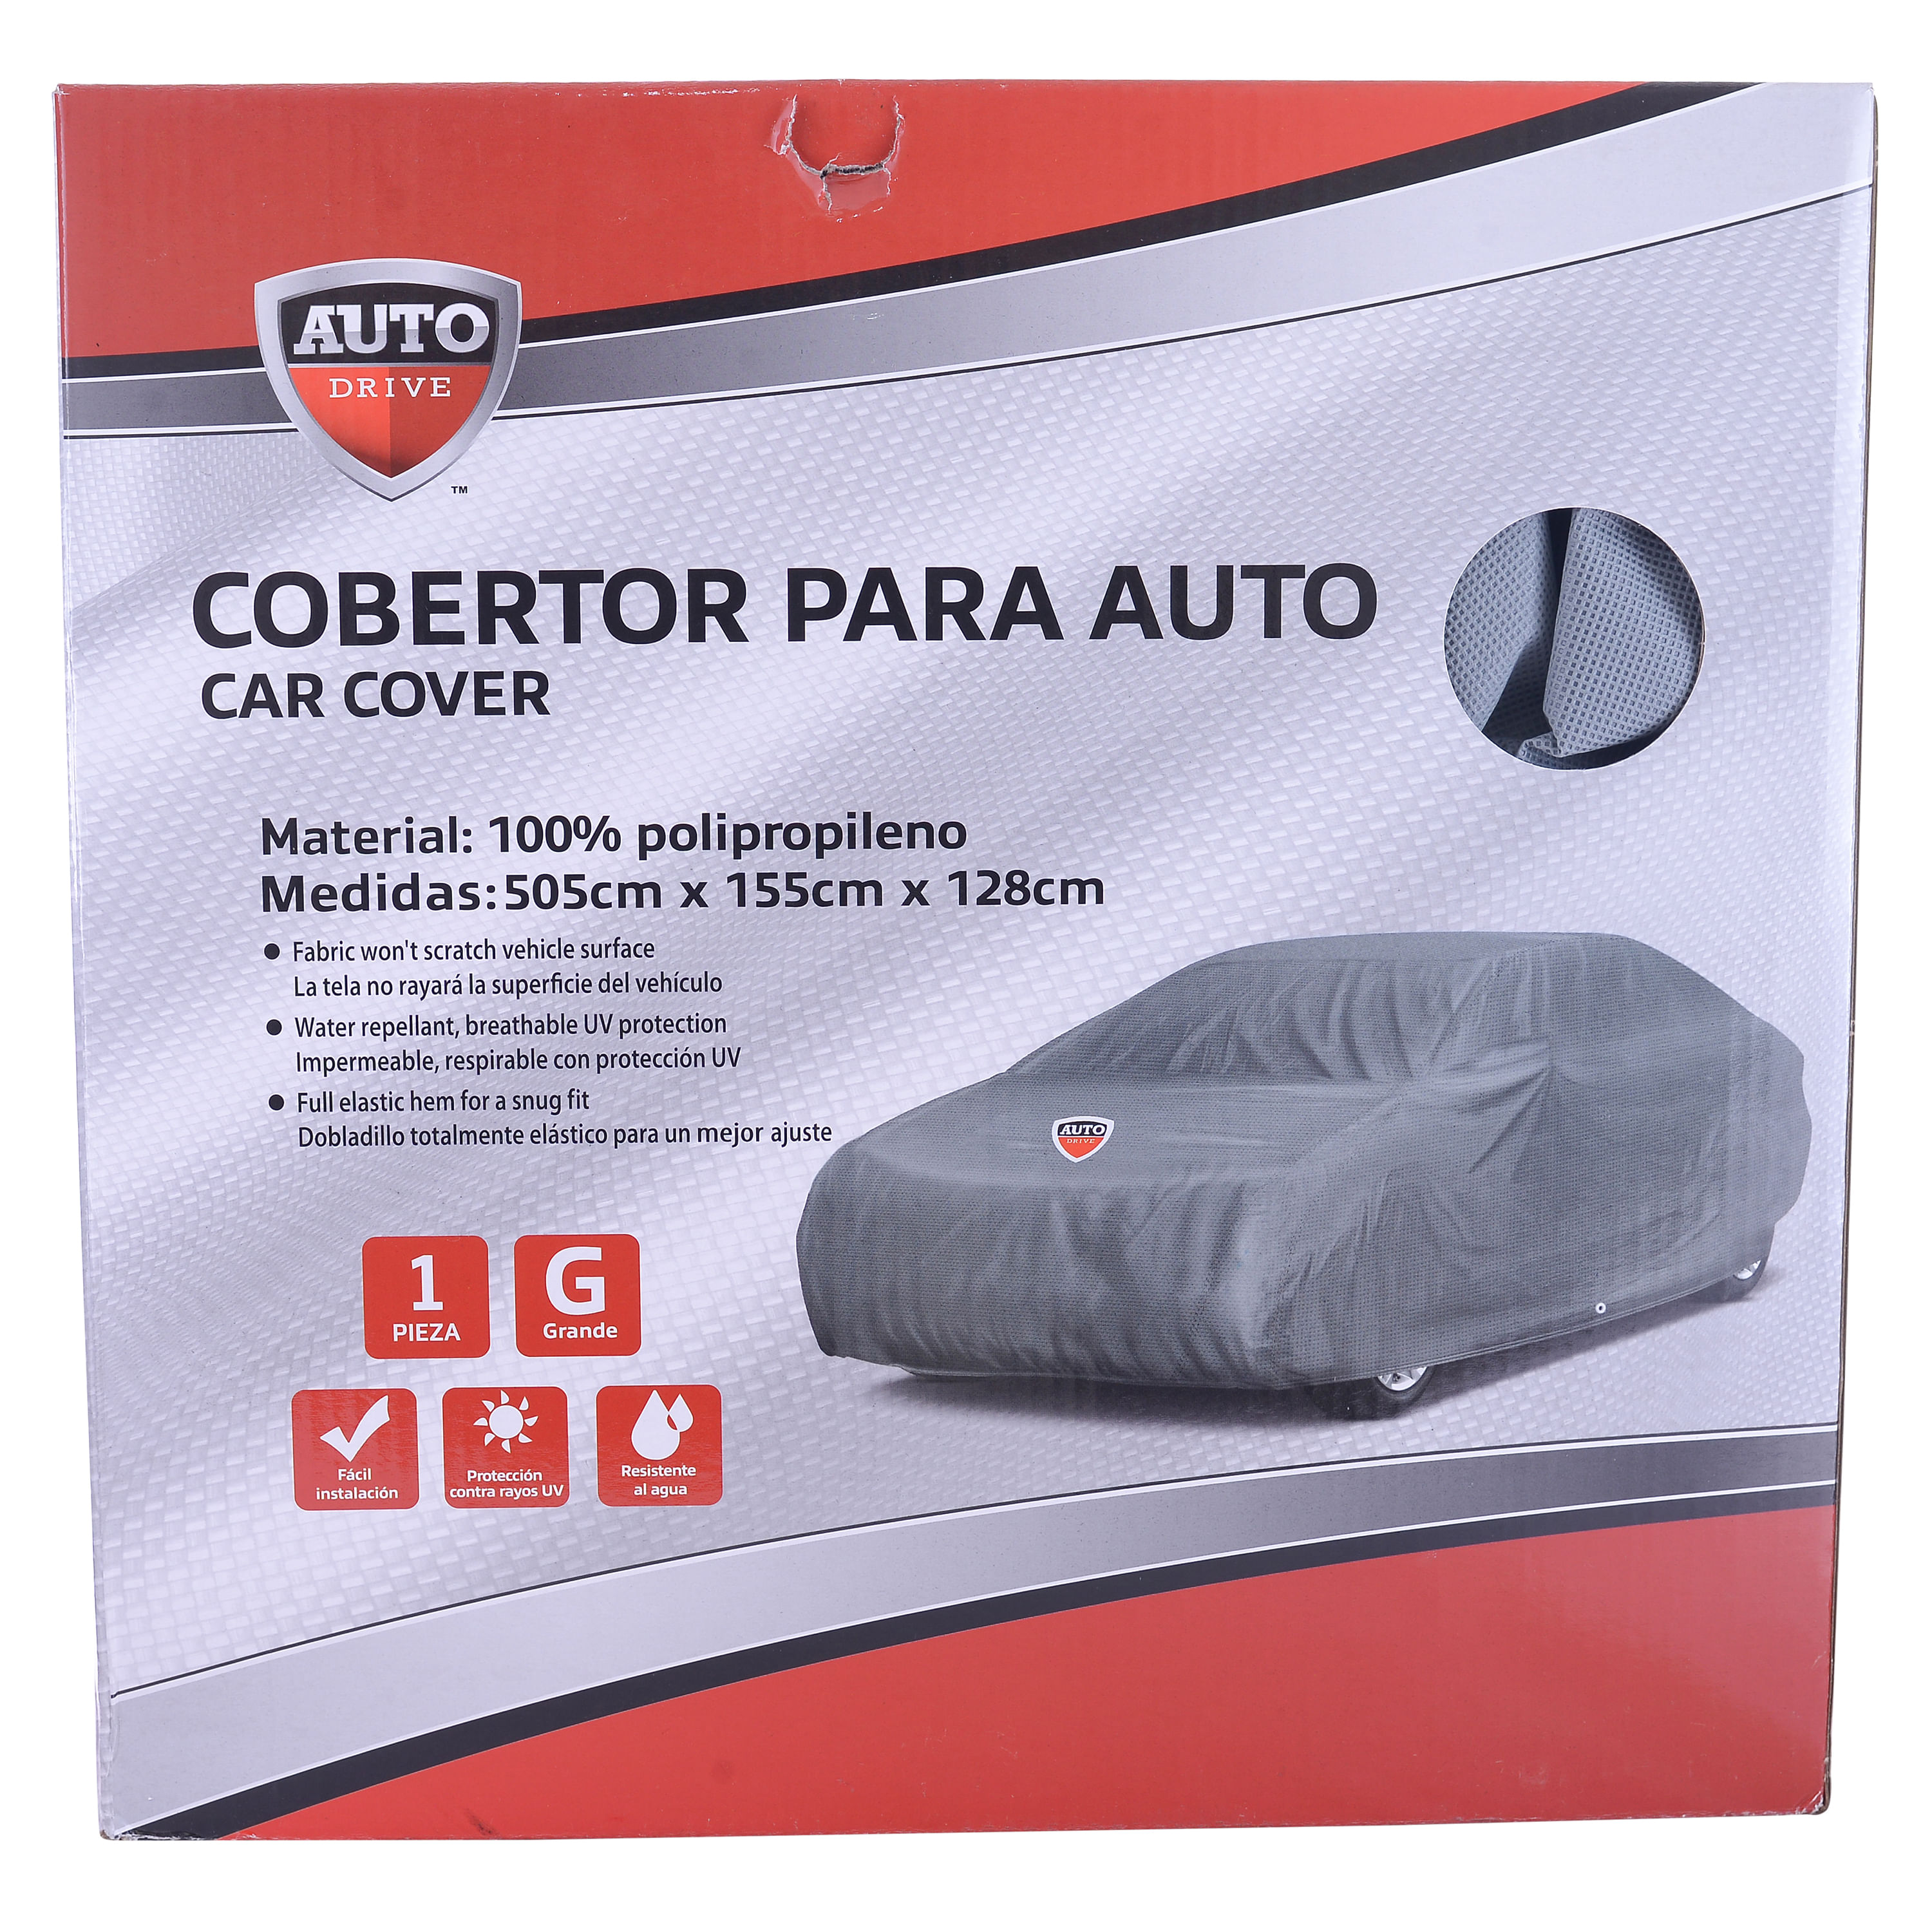 Comprar Cobertor Carro Auto Drive Talla L - Unidad | Walmart Honduras